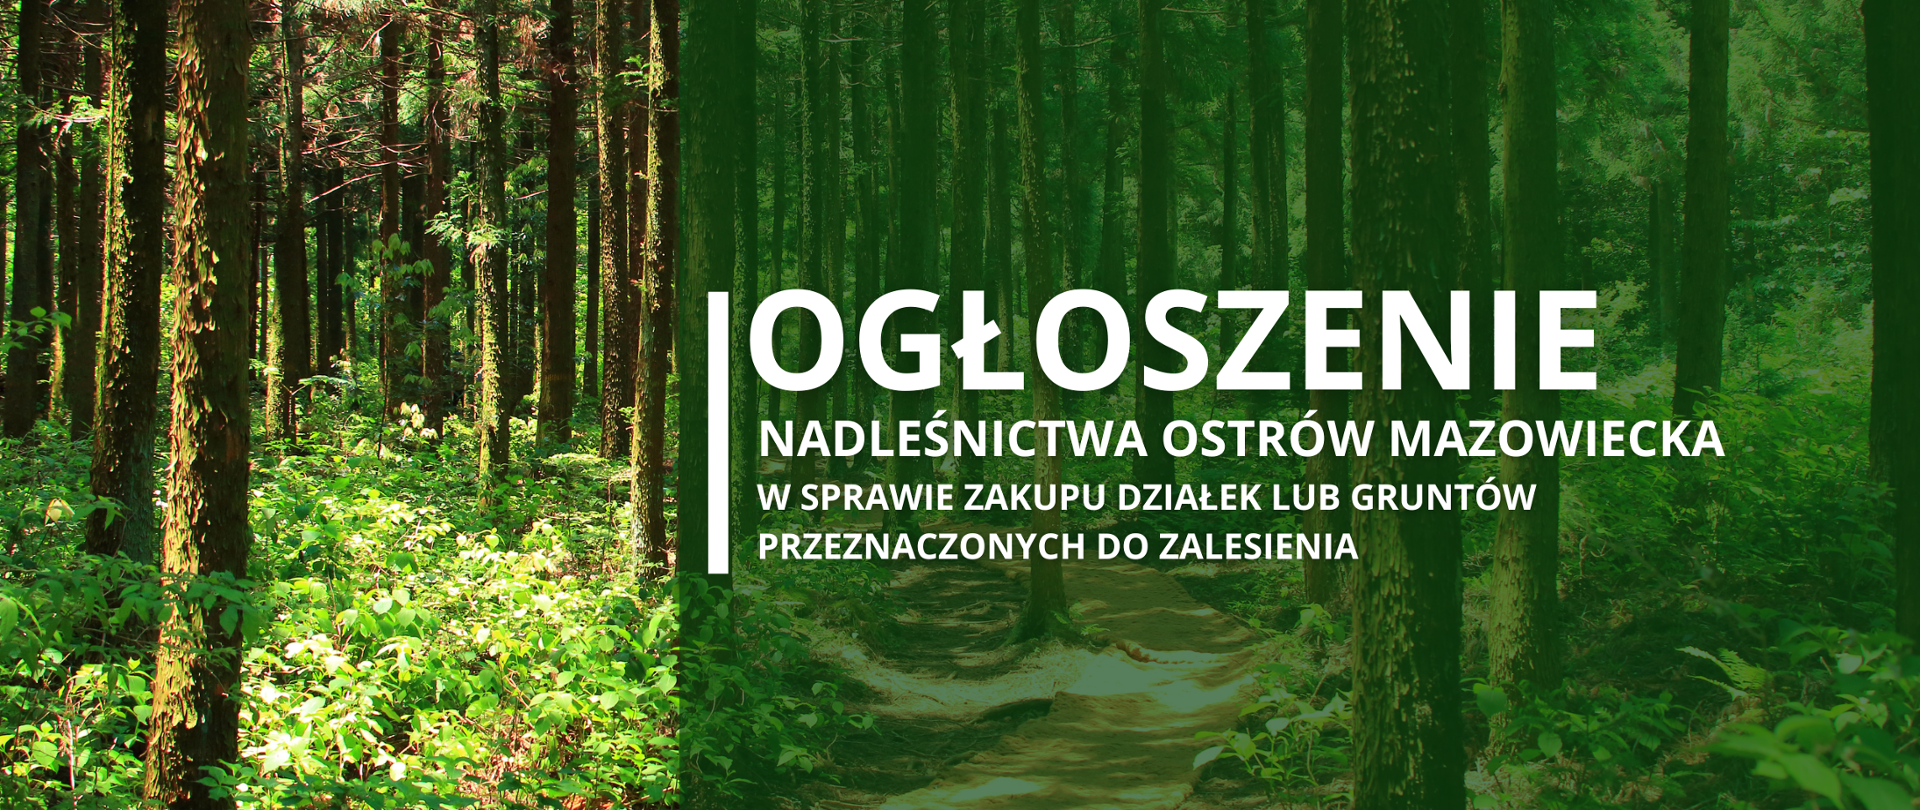 W tle zdjęcie lasu, na pierwszym planie treść: "Ogłoszenie Nadleśnictwa Ostrów Mazowiecka w sprawie zakupu działek lub gruntów przeznaczonych do zalesienia"